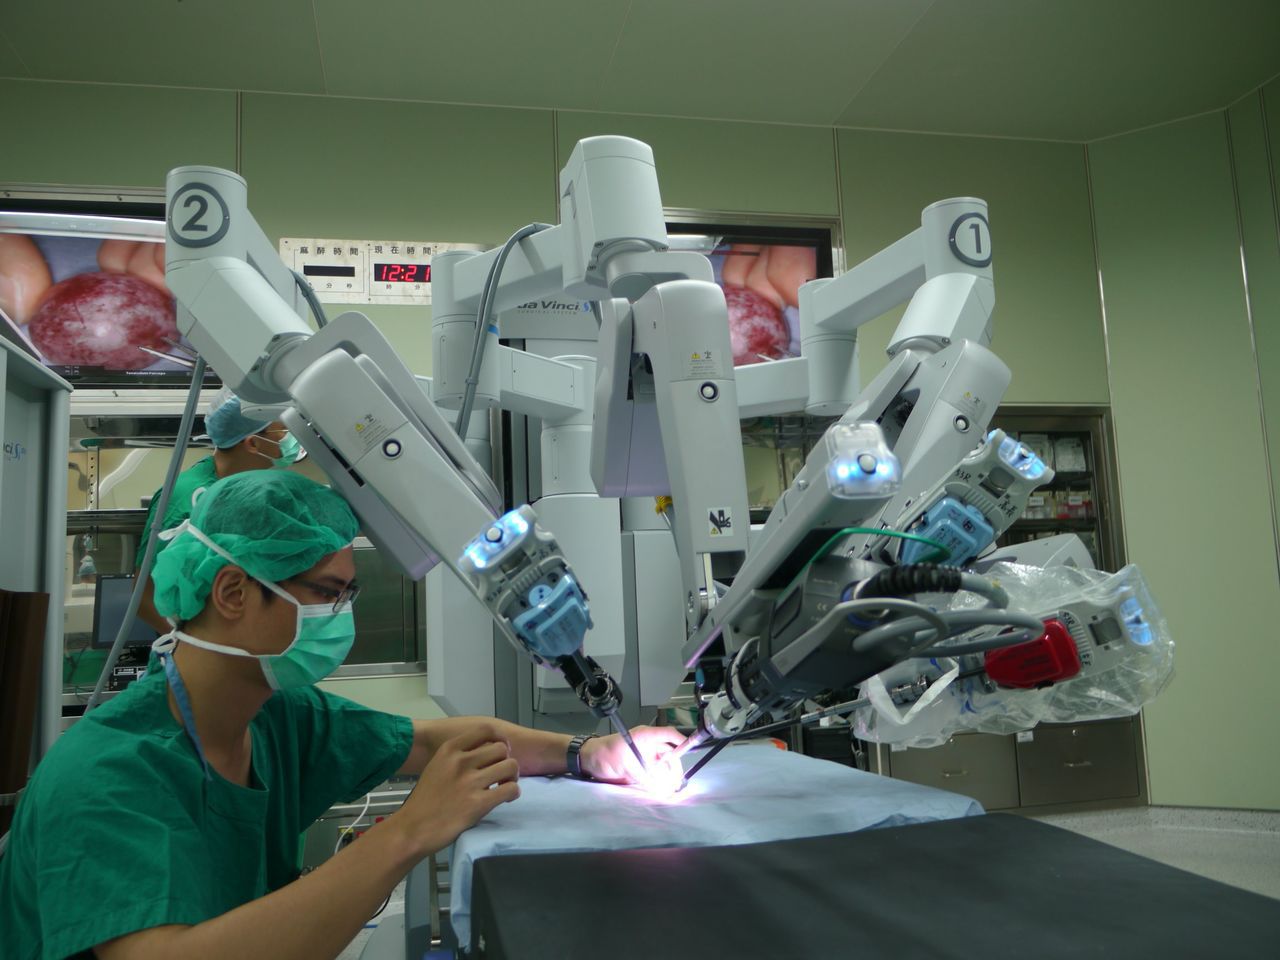 達文西手術的醫師在機器架設好之後，躲在3D的螢幕前，像是打電動玩具一般，控制機器人手臂達到和傳統手術方法一樣的效果。 